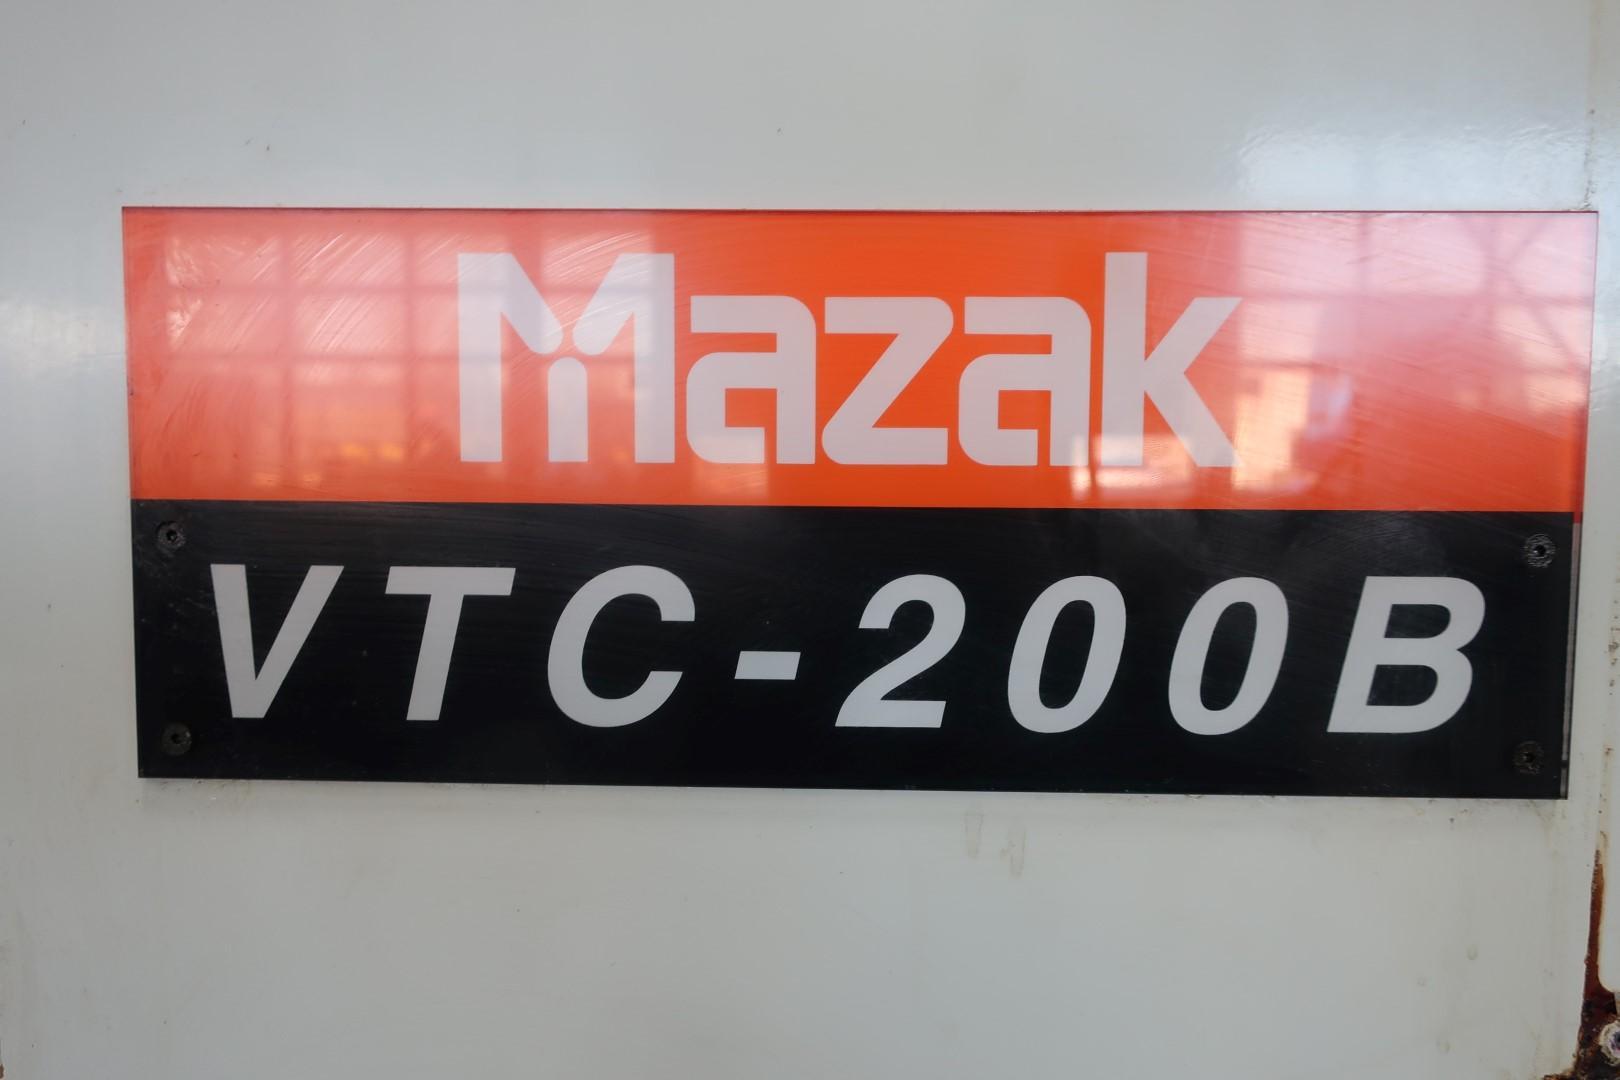 Milling/Mazak - VTC-200B